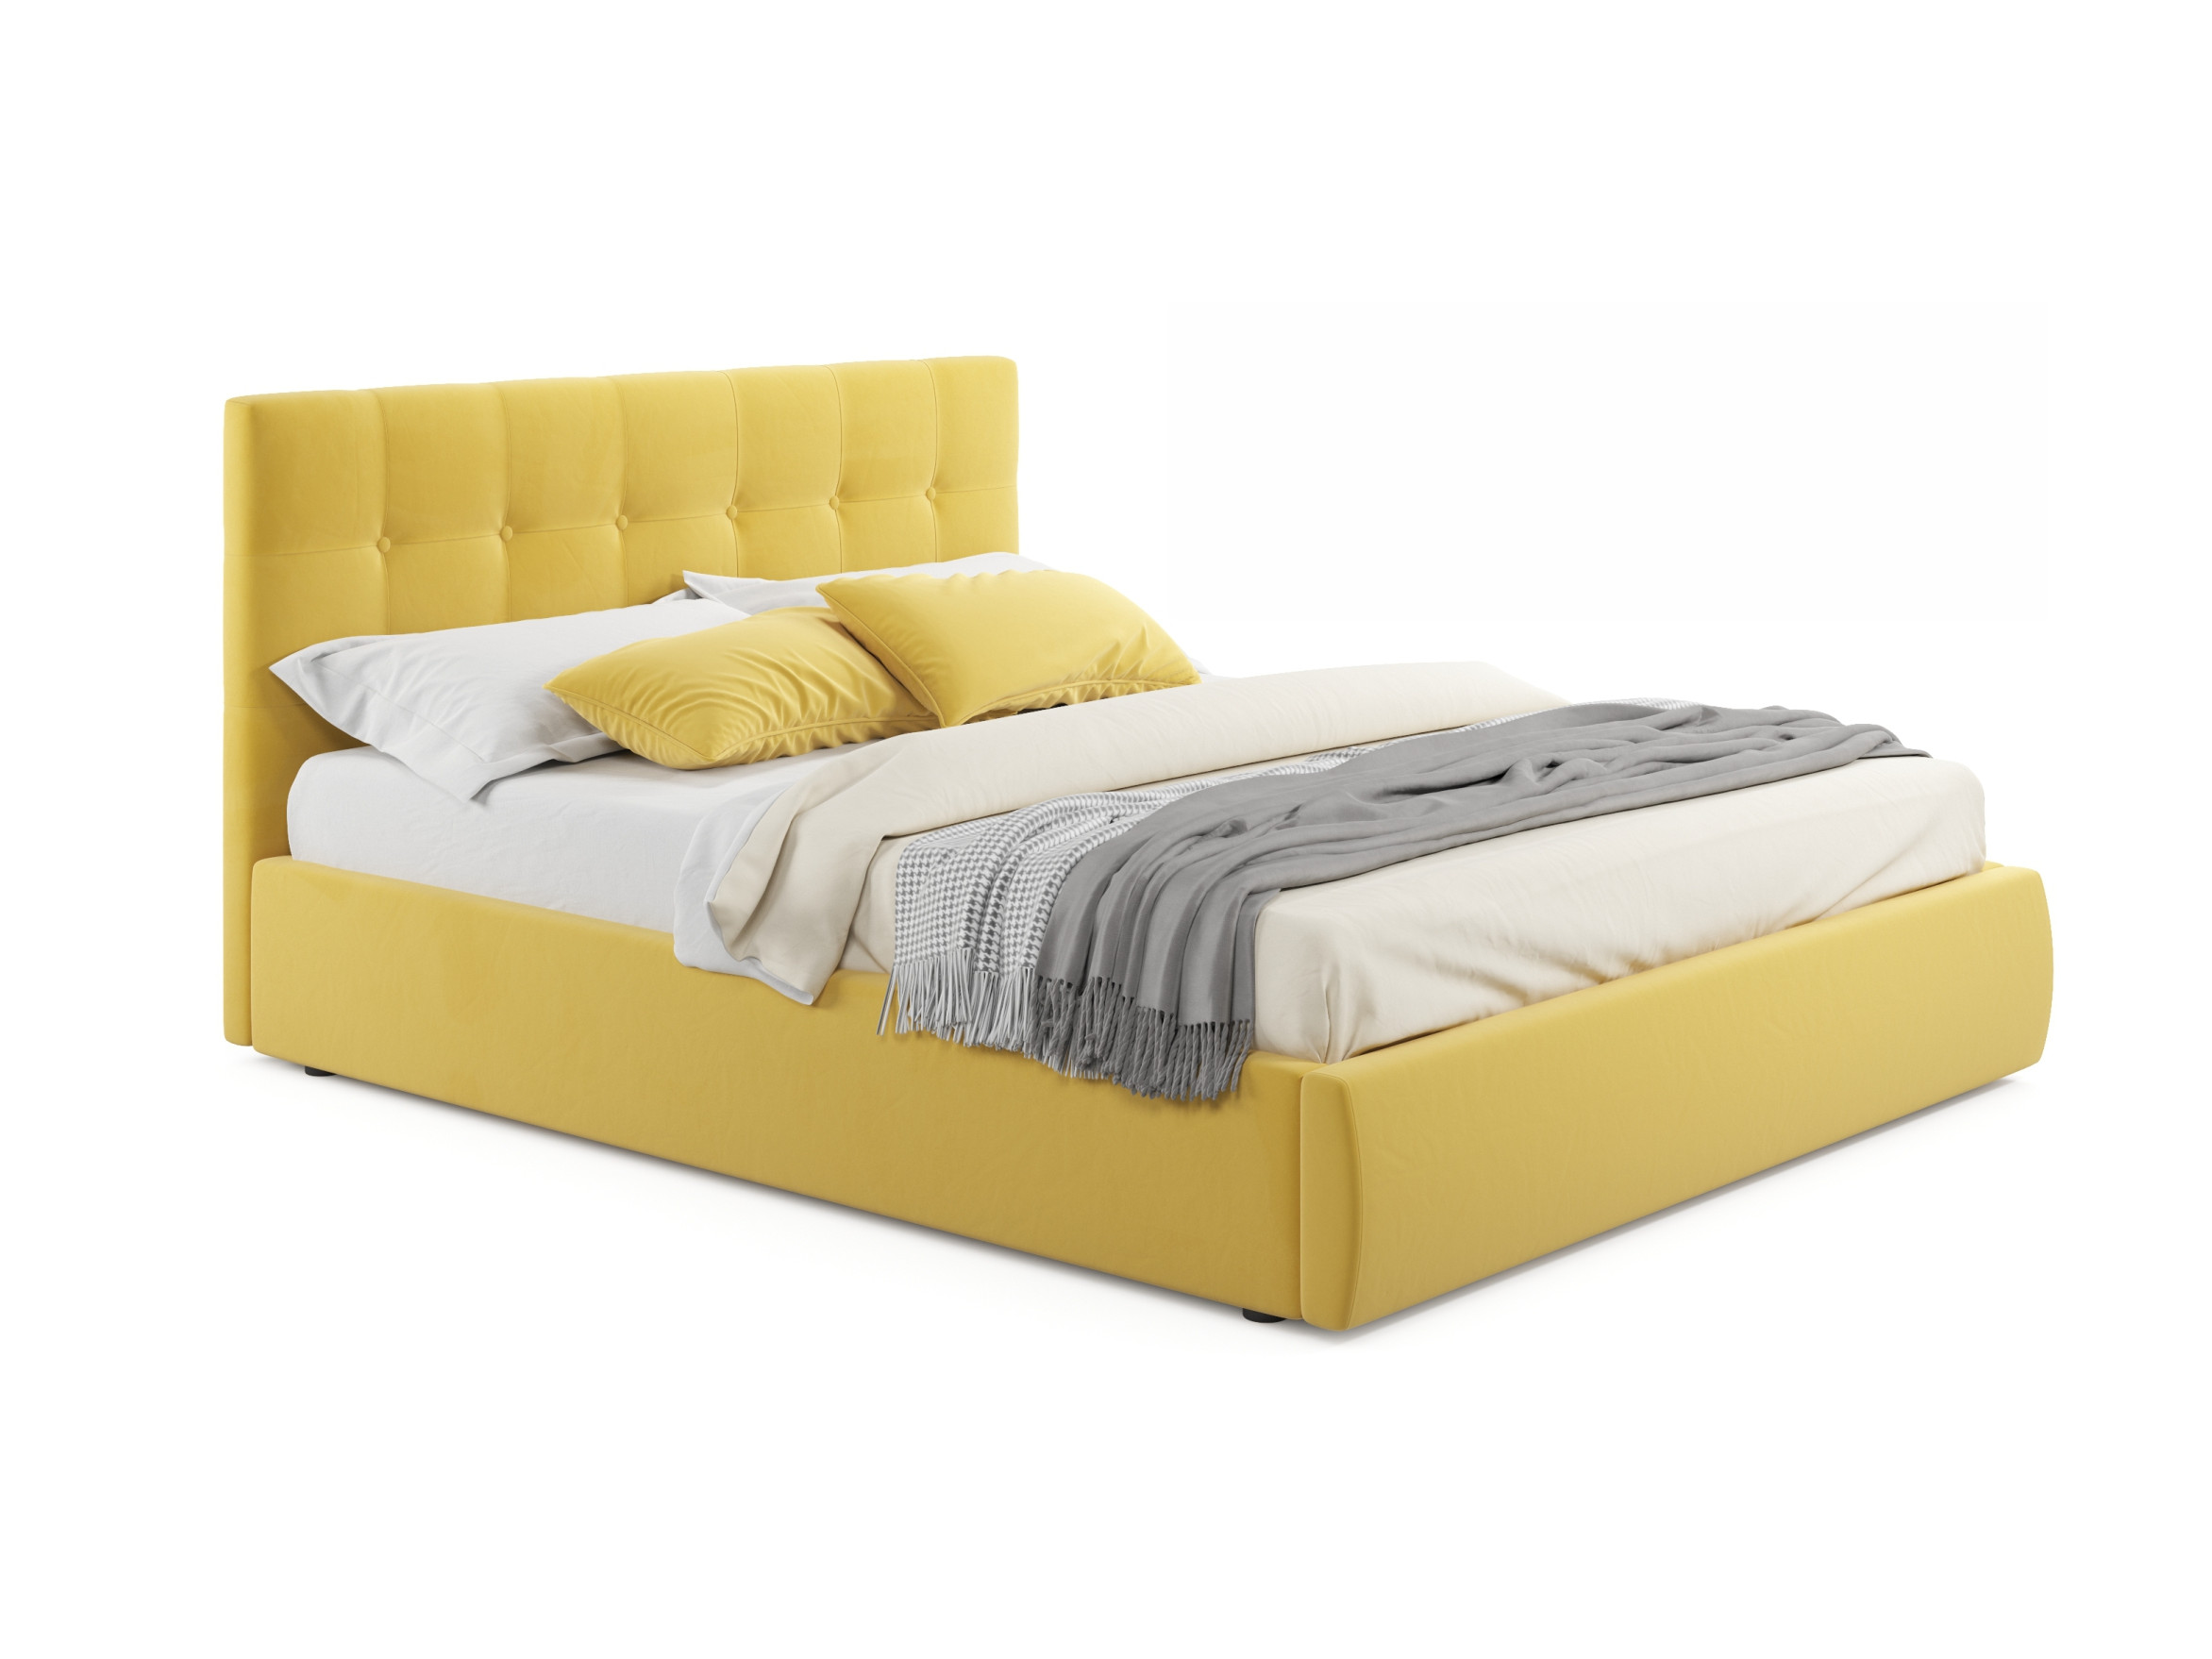 Мягкая кровать Selesta 1400 желтая с матрасом АСТРА с подъе мягкая кровать ameli 1400 желтая с подъемным механизмом с матрасом астра желтый желтый велюр дсп фанера